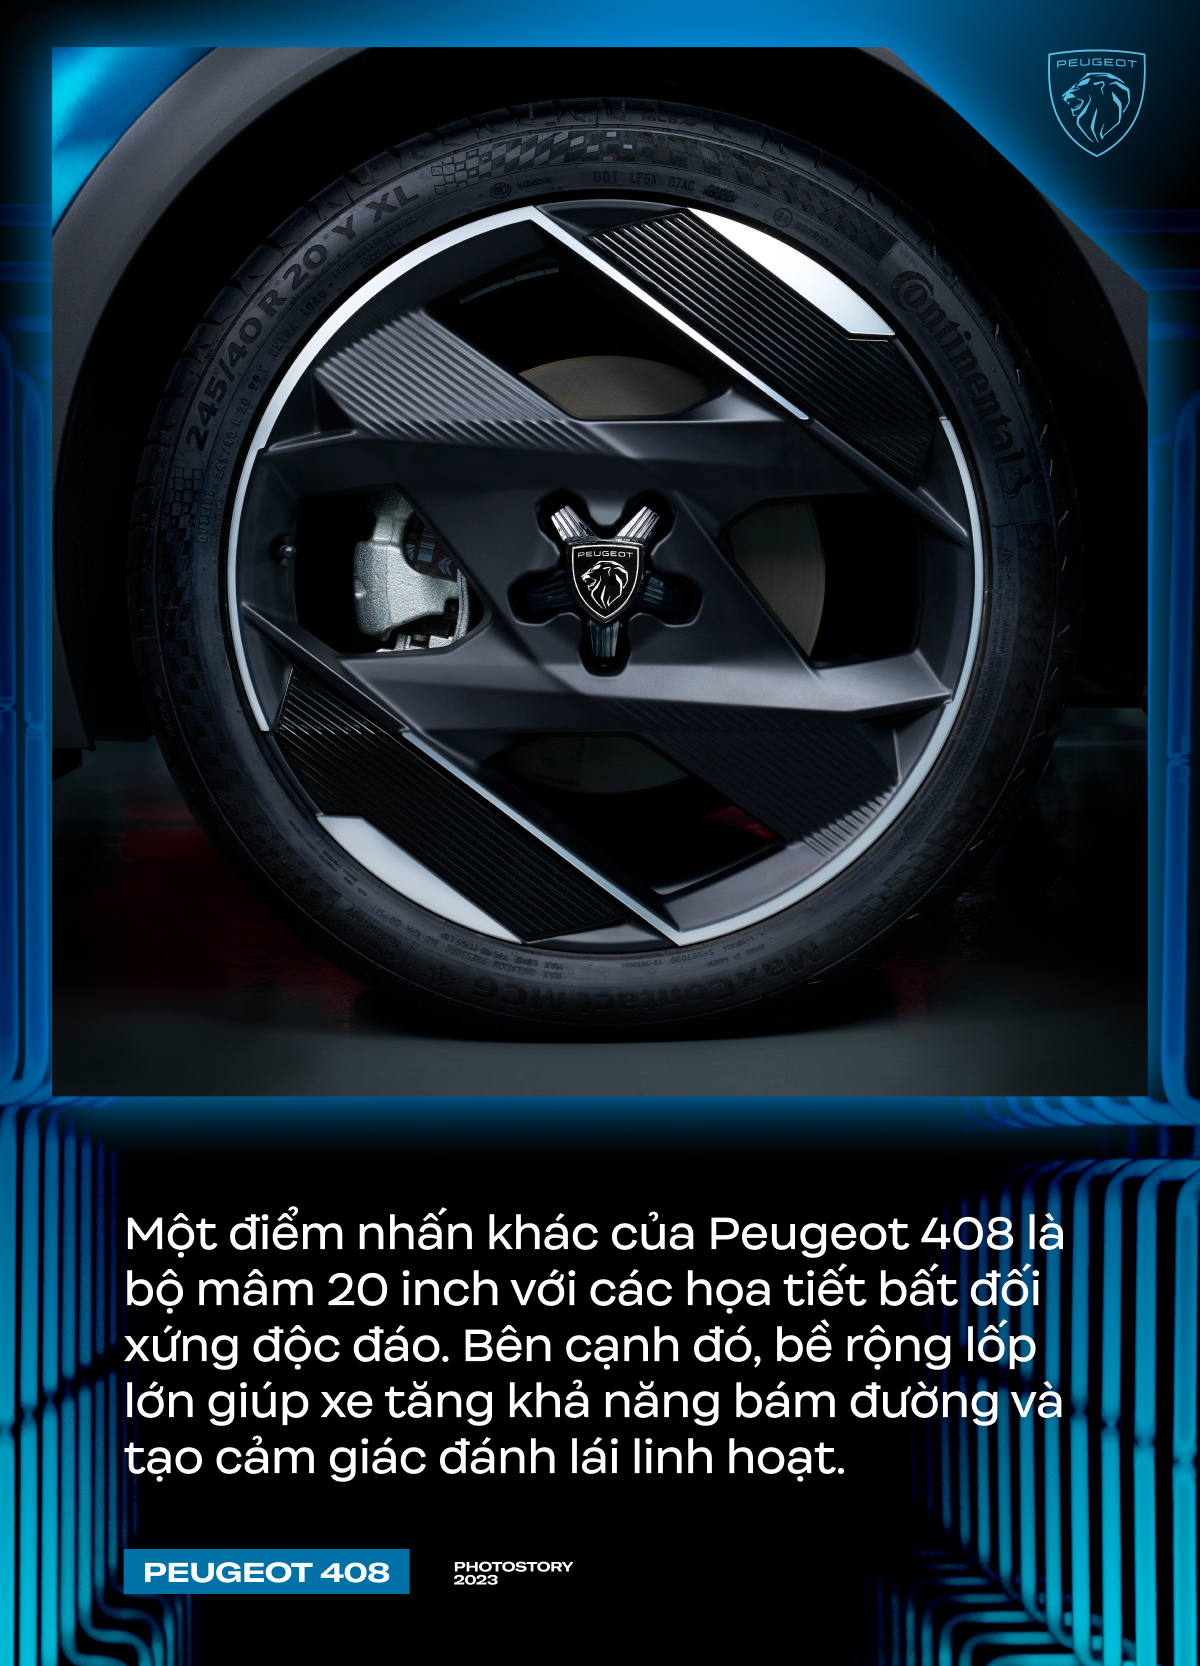 Peugeot 408 - Lựa chọn khác biệt cho người Việt ở phân khúc SUV hạng C- Ảnh 4.